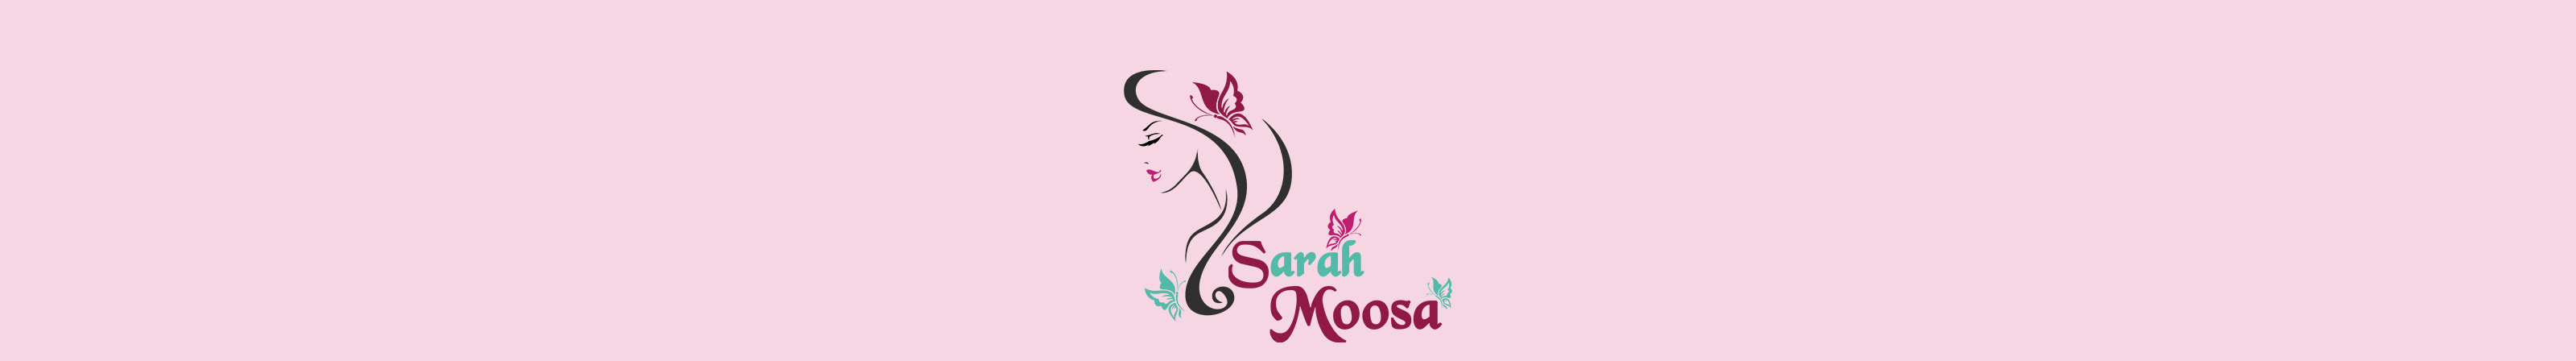 sarah moosa's profile banner